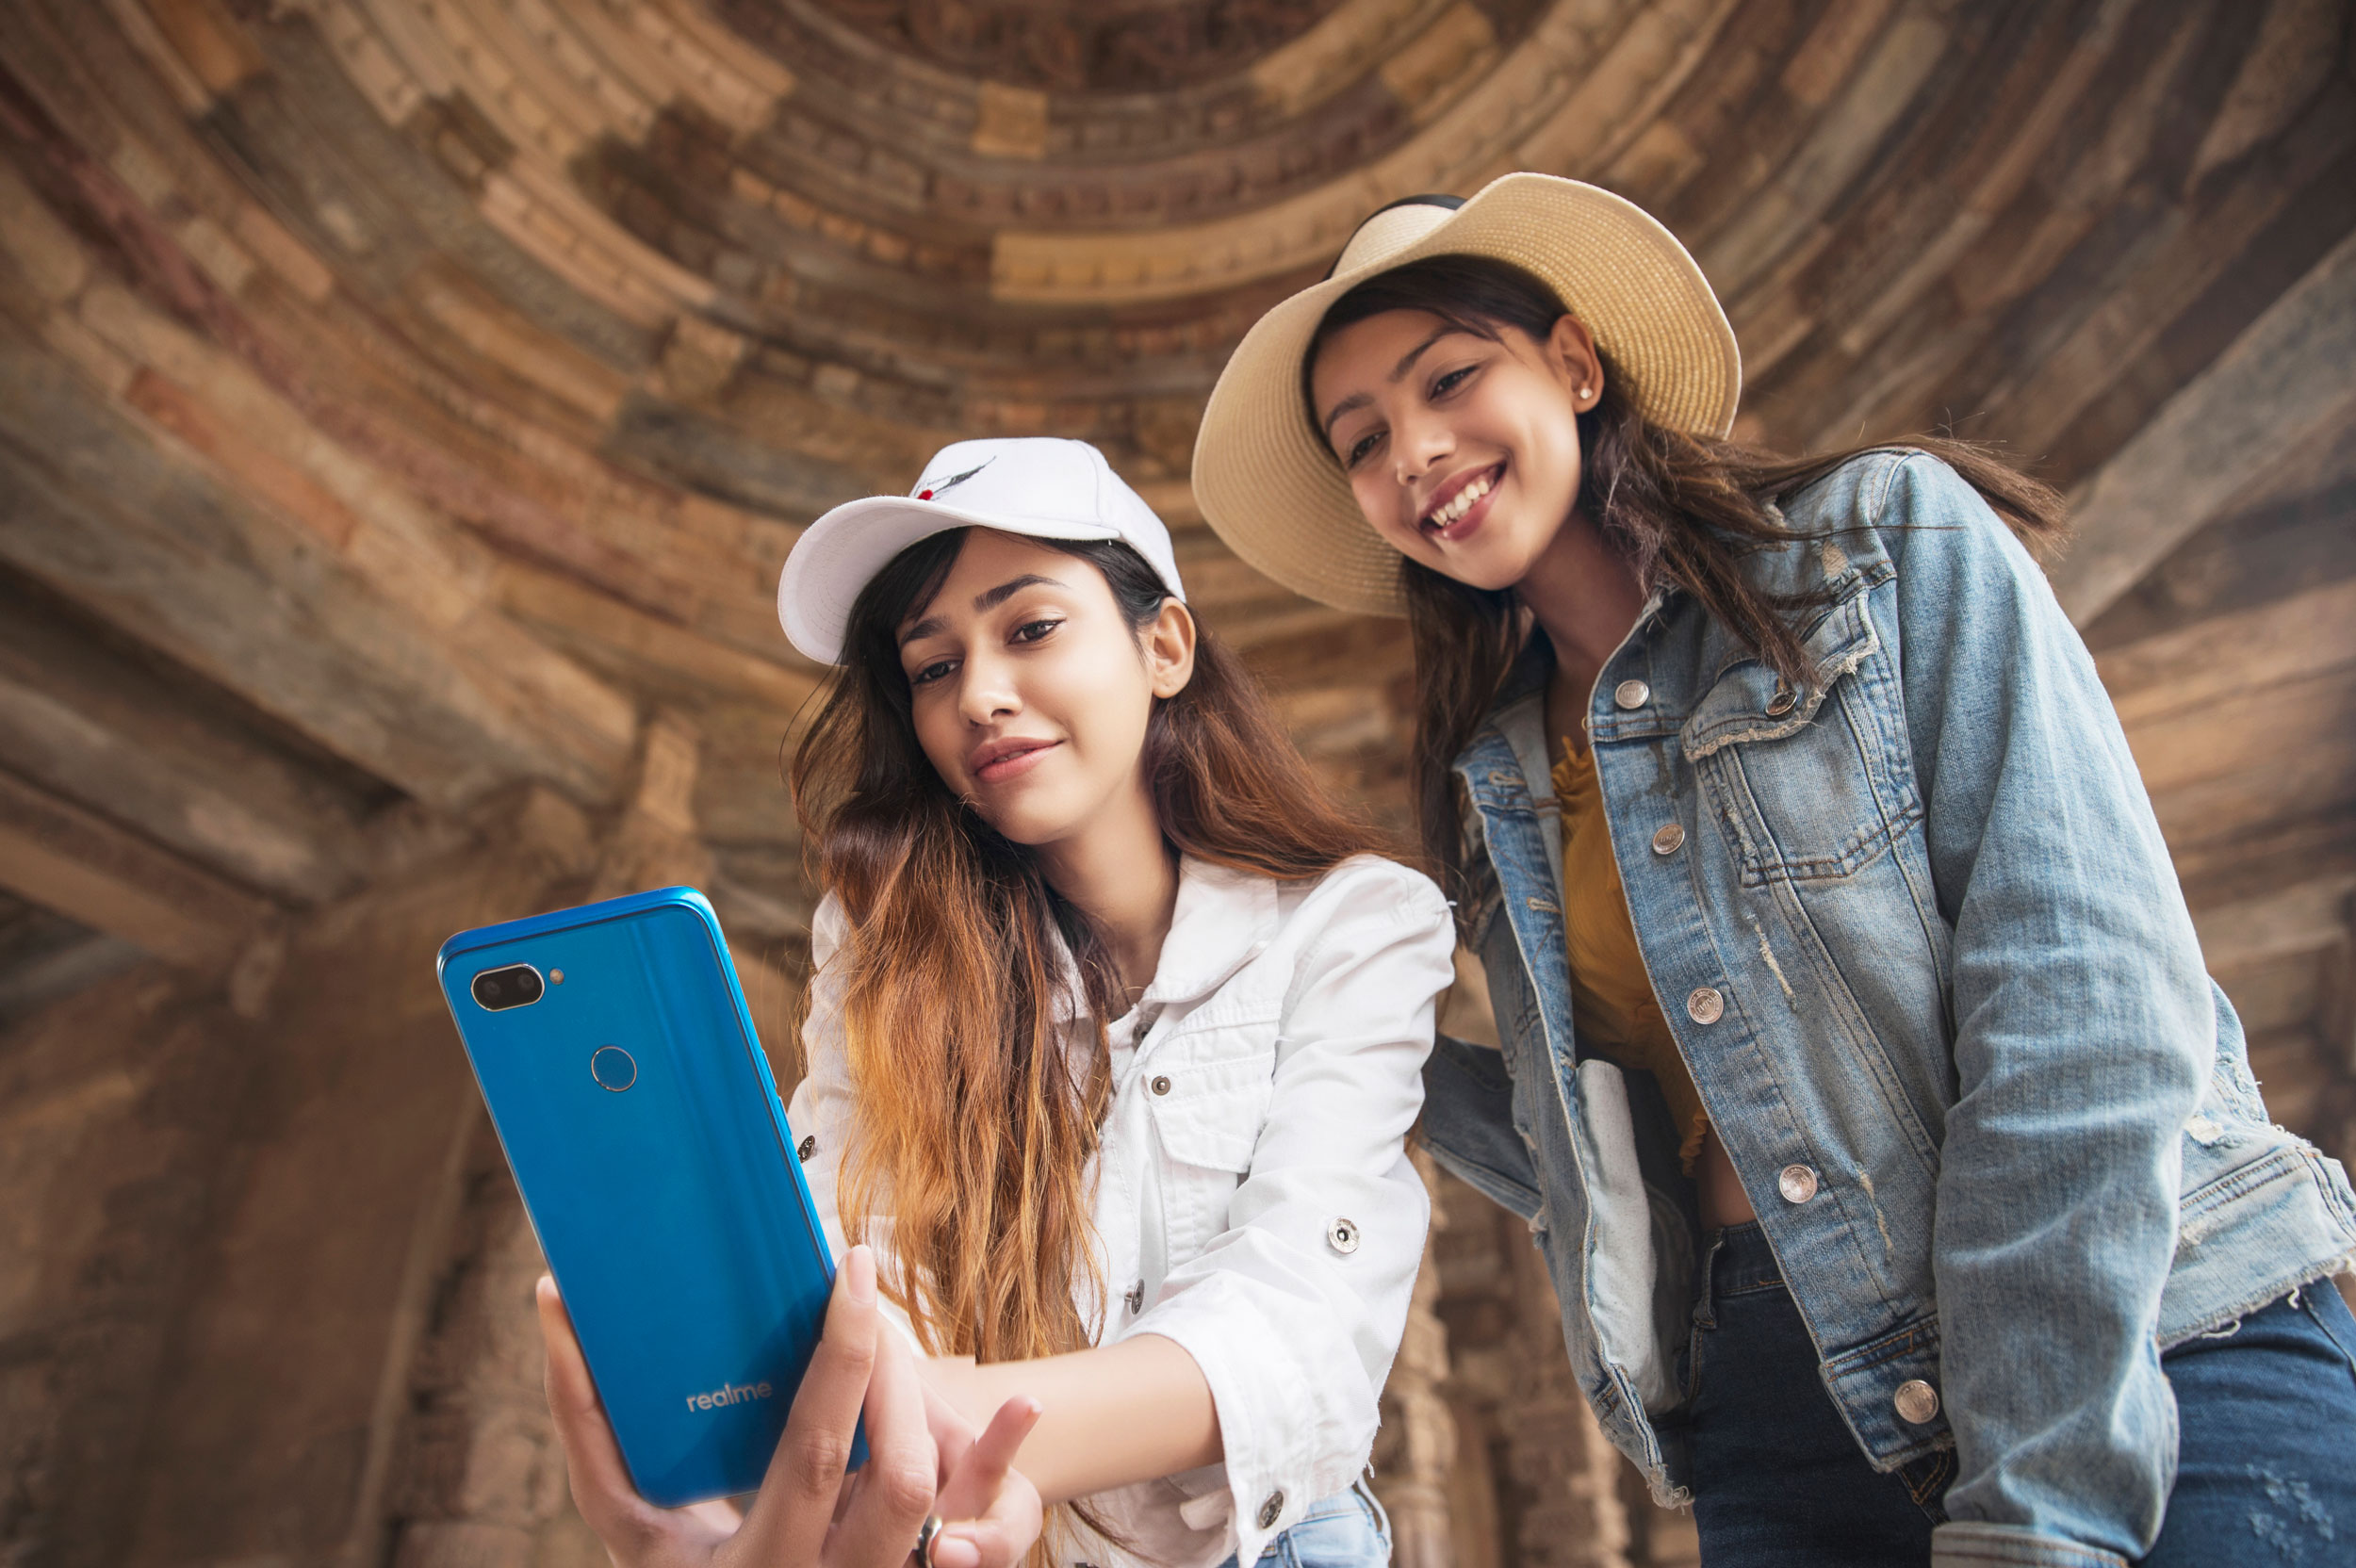 Realme đánh dấu sự hợp tác cùng MediaTek với smartphone đầu tiên trang bị vi xử lý Helio P70 – Realme U1